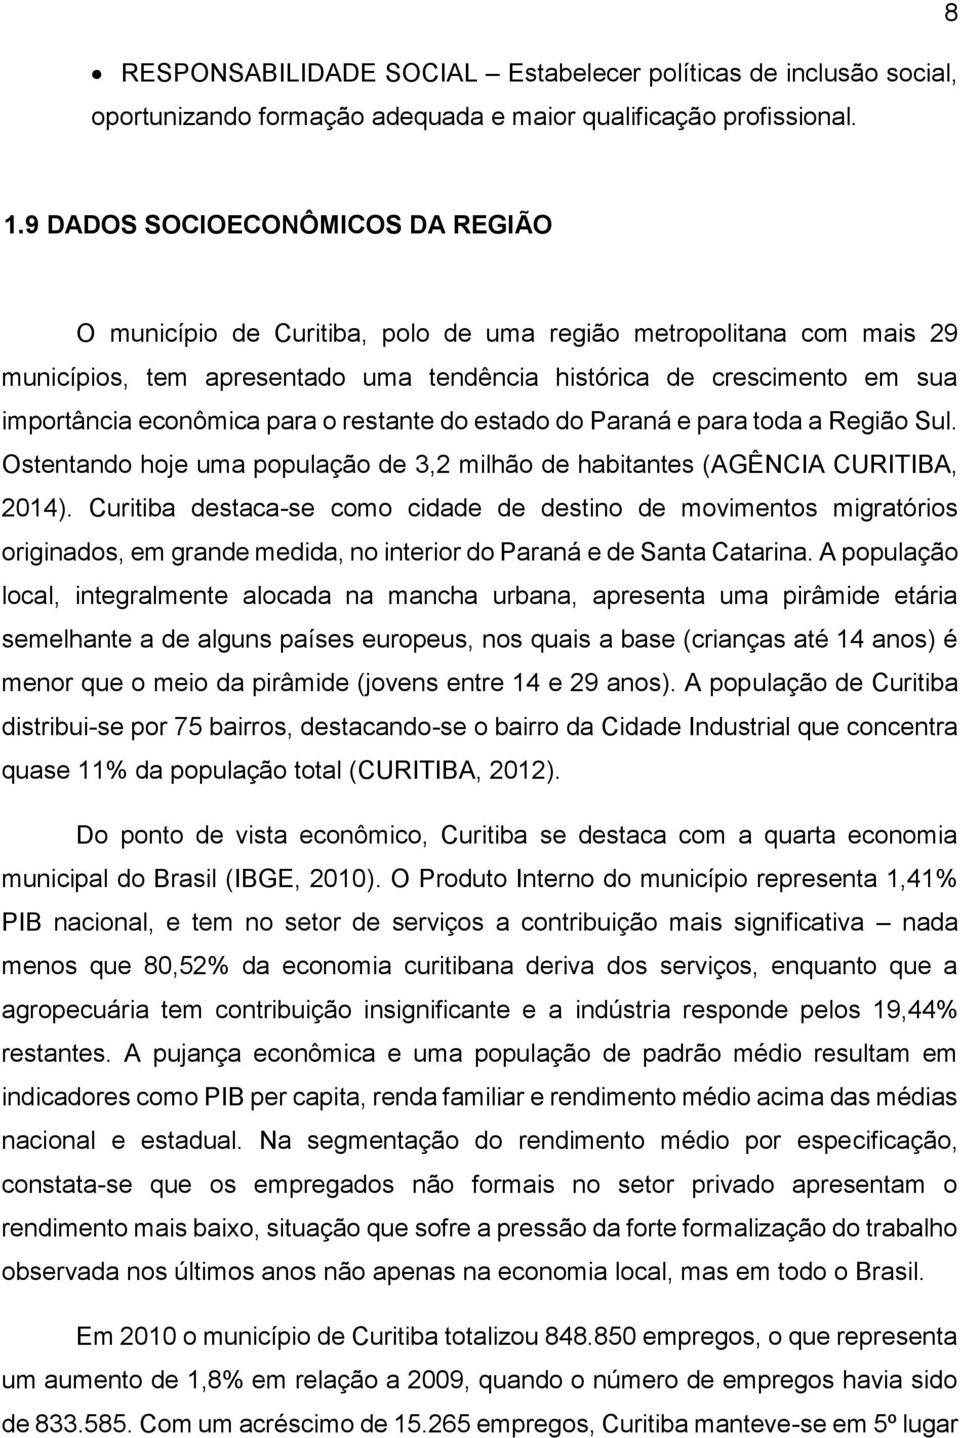 para o restante do estado do Paraná e para toda a Região Sul. Ostentando hoje uma população de 3,2 milhão de habitantes (AGÊNCIA CURITIBA, 2014).